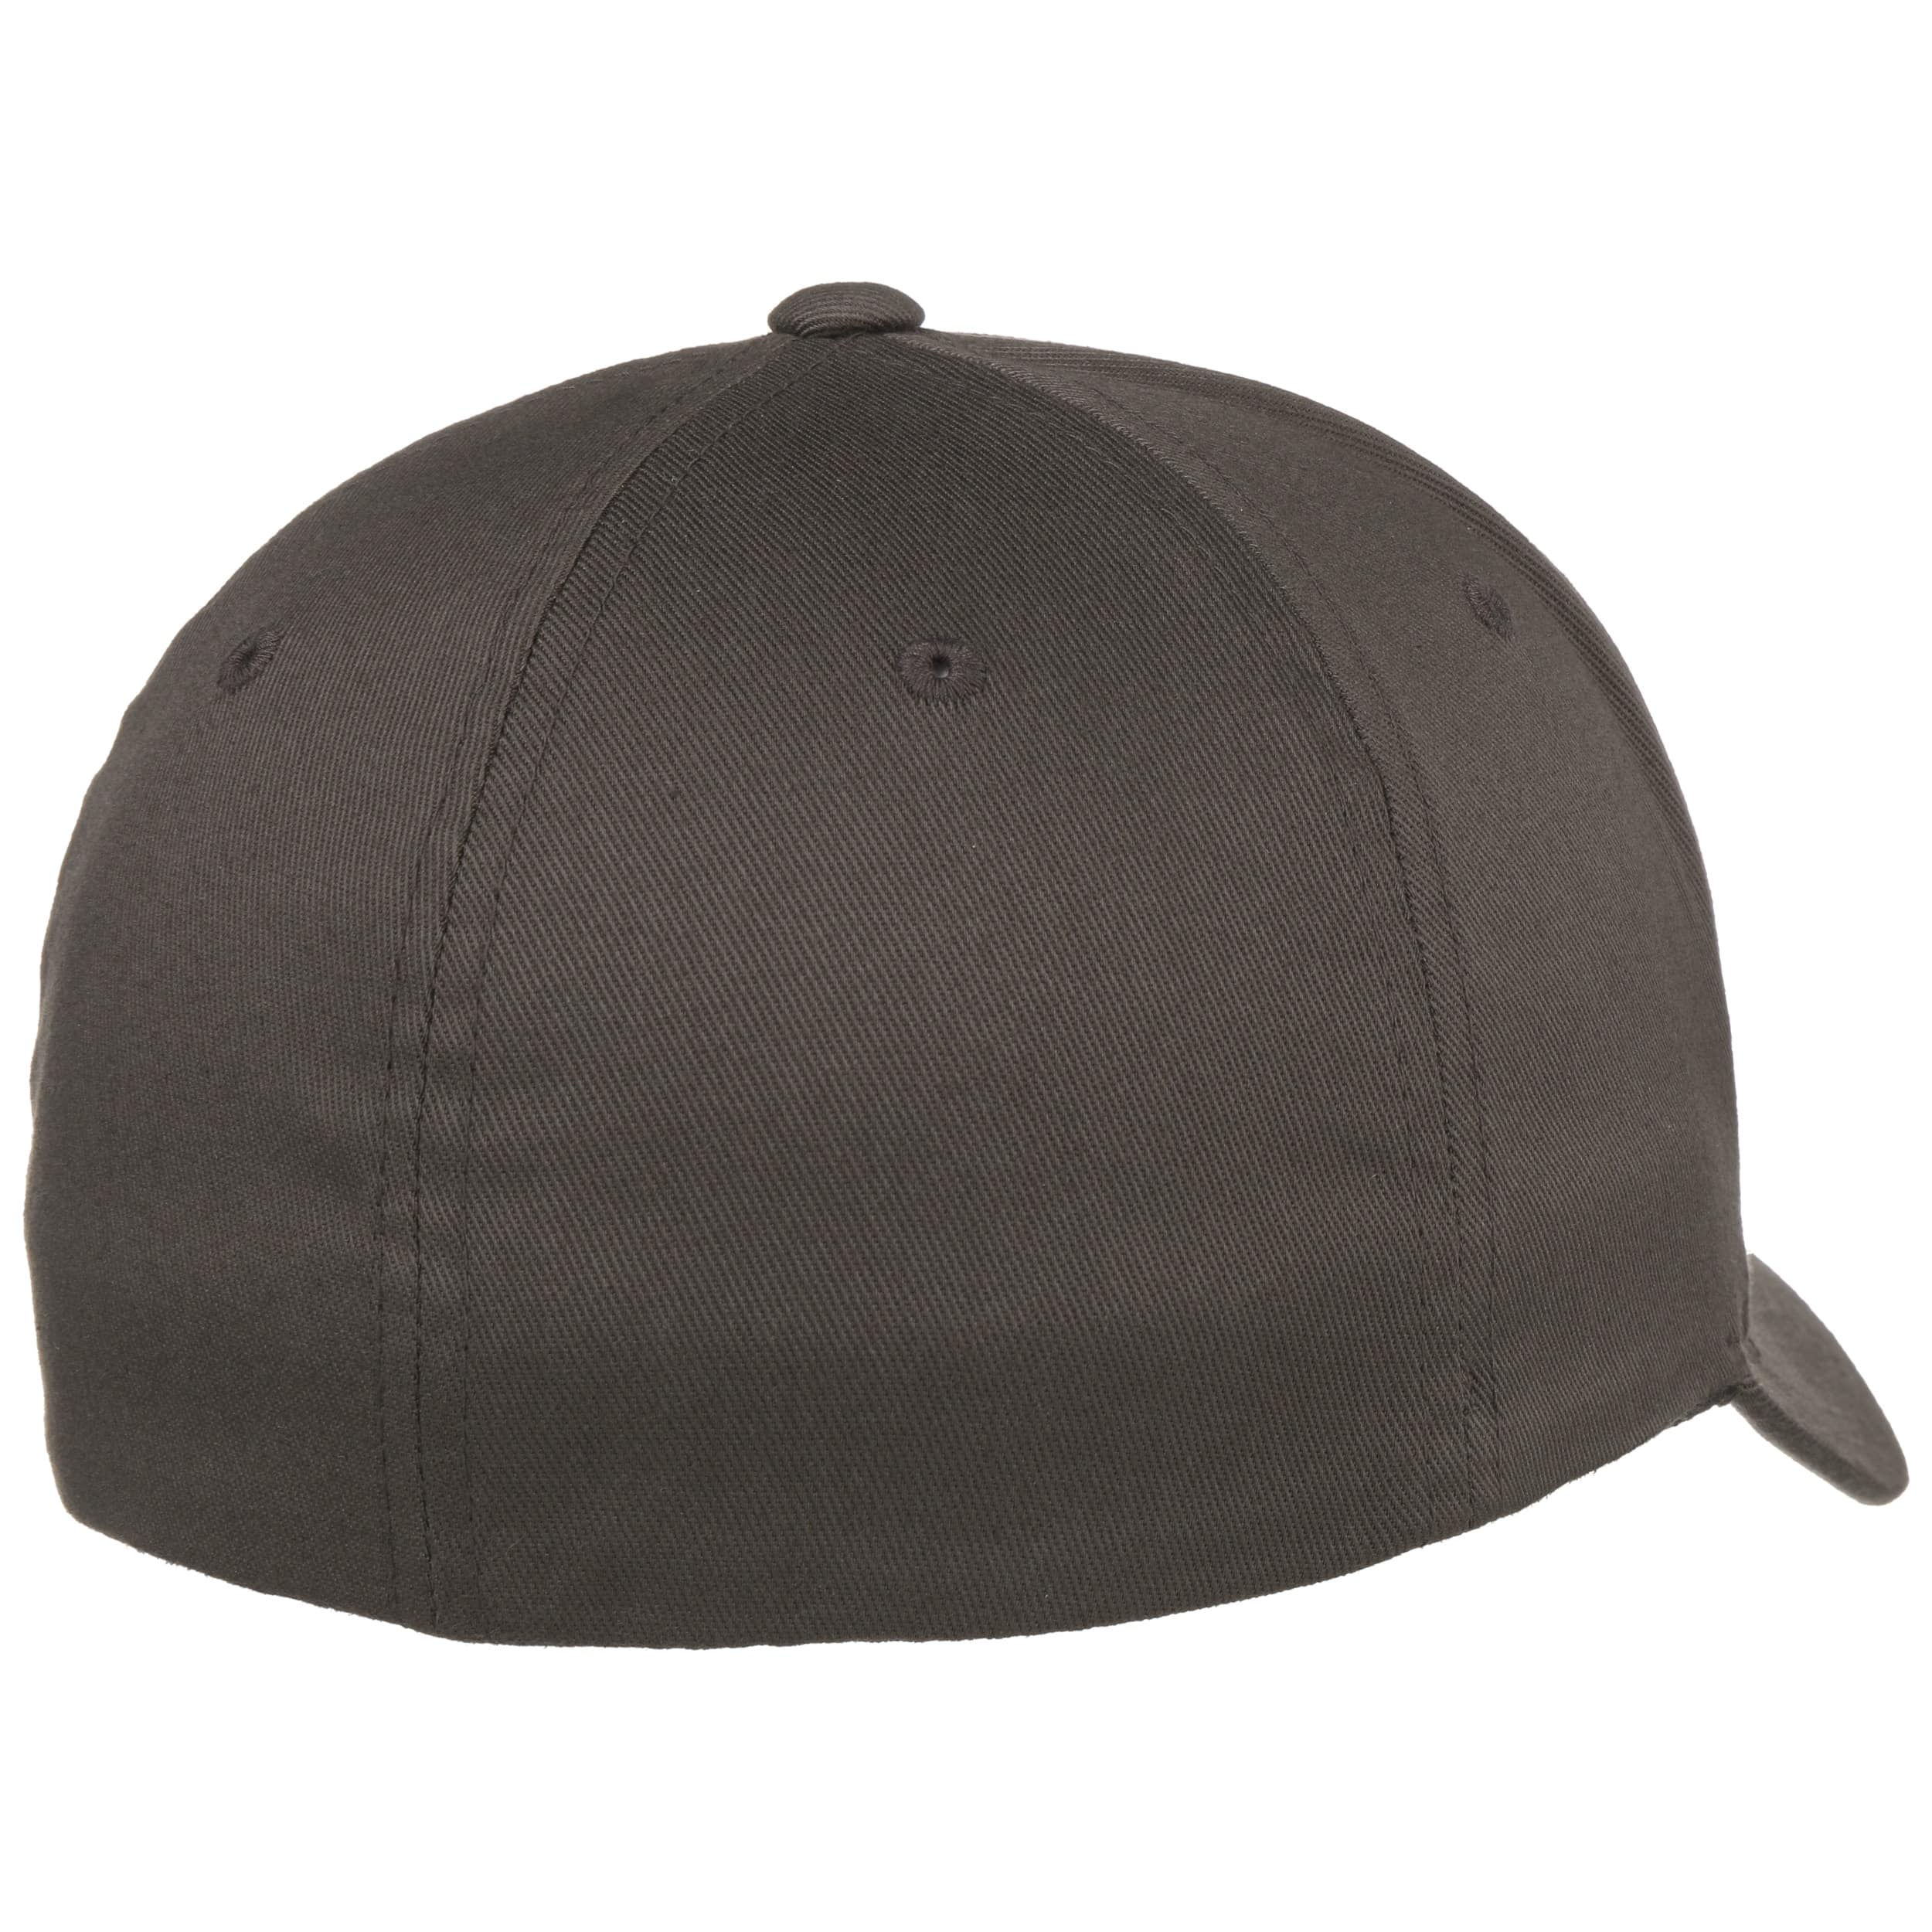 grey baseball cap